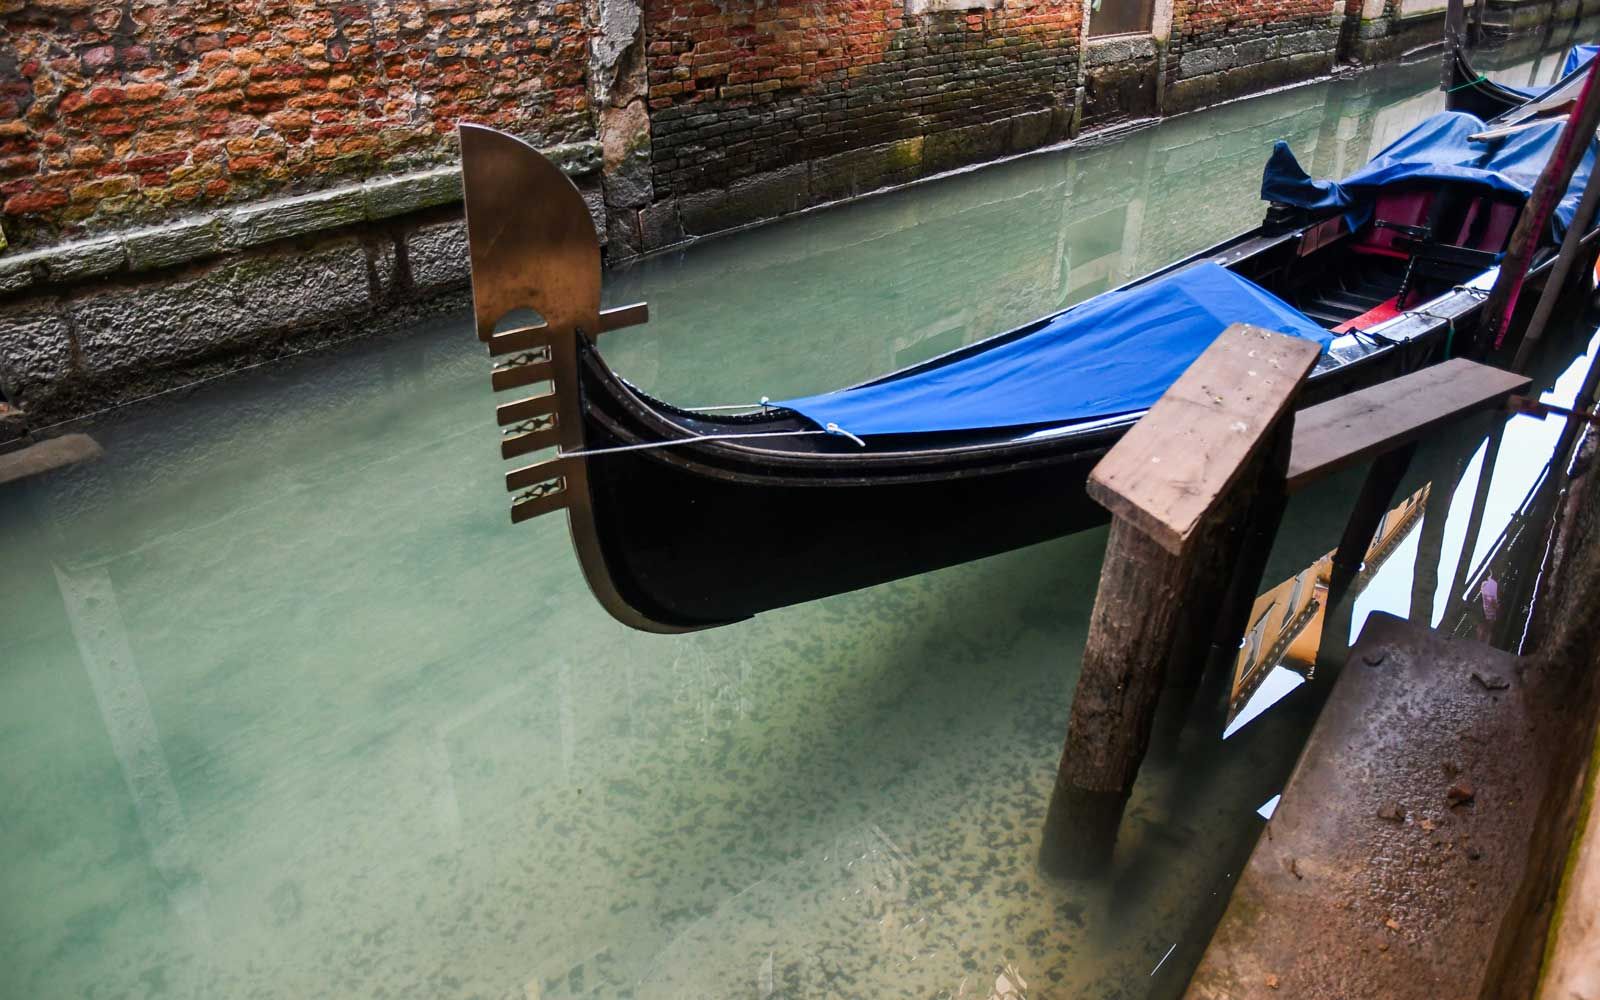 Čistije vode gondolom u venecijanskom kanalu 17. ožujka 2020